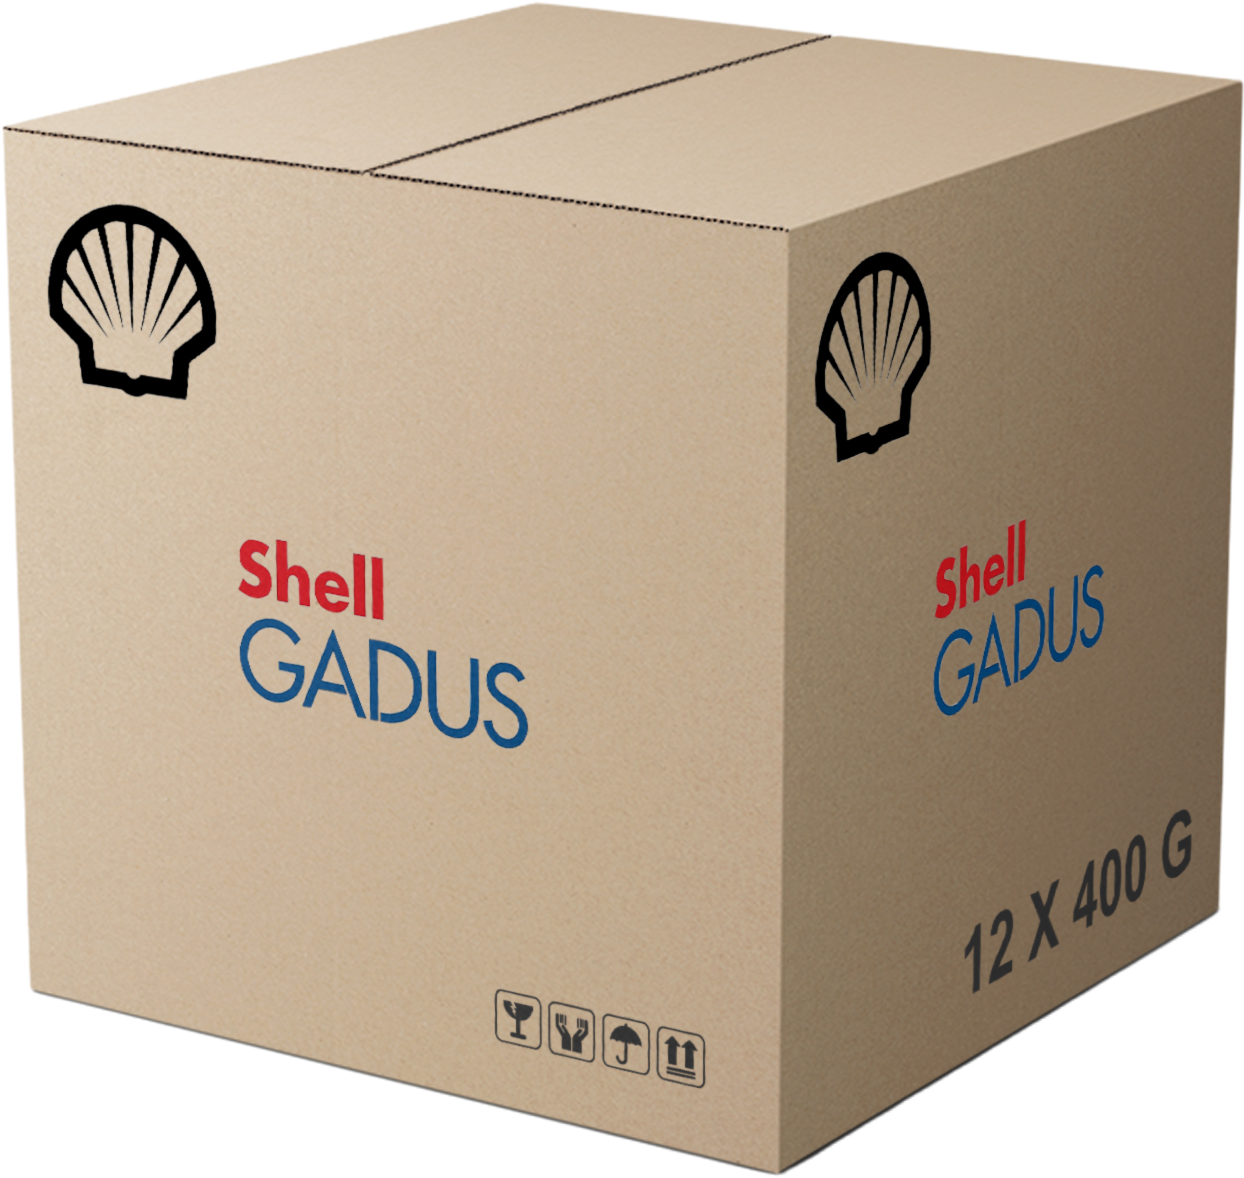 Shell Gadus S2 V100 3, 12 x 400 gr